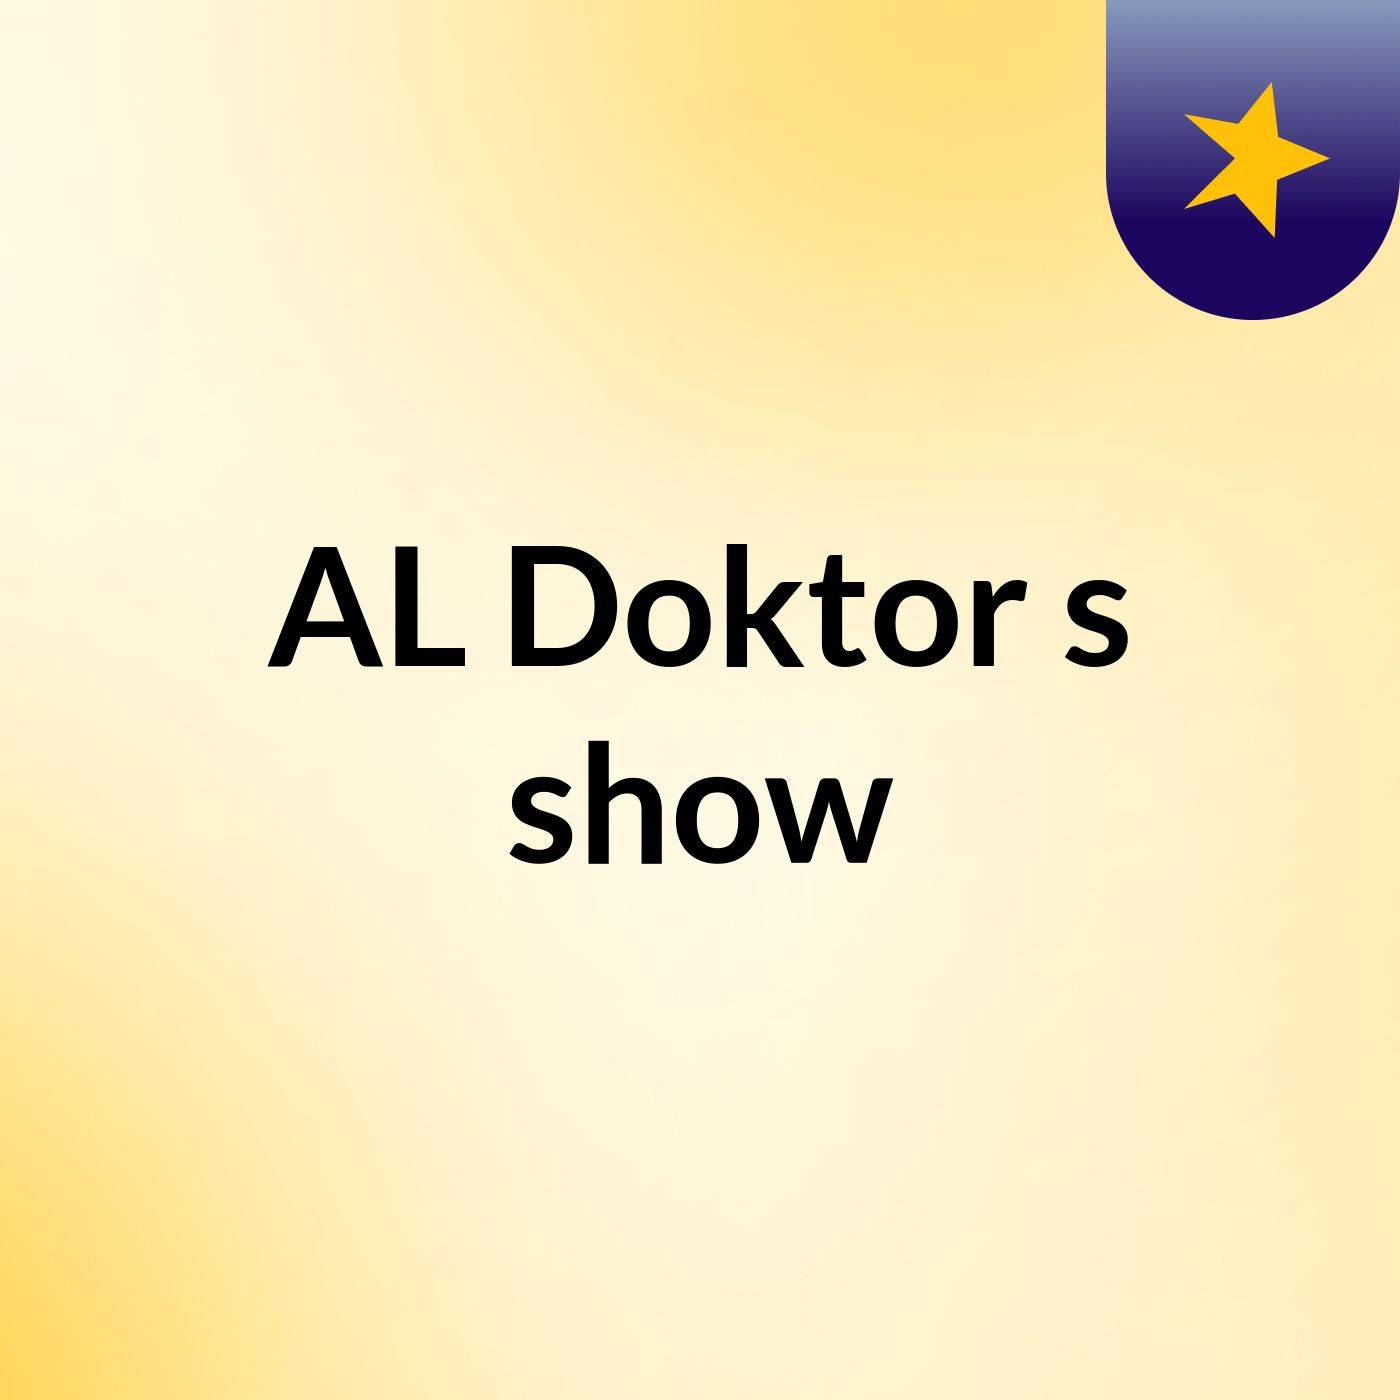 AL Doktor's show